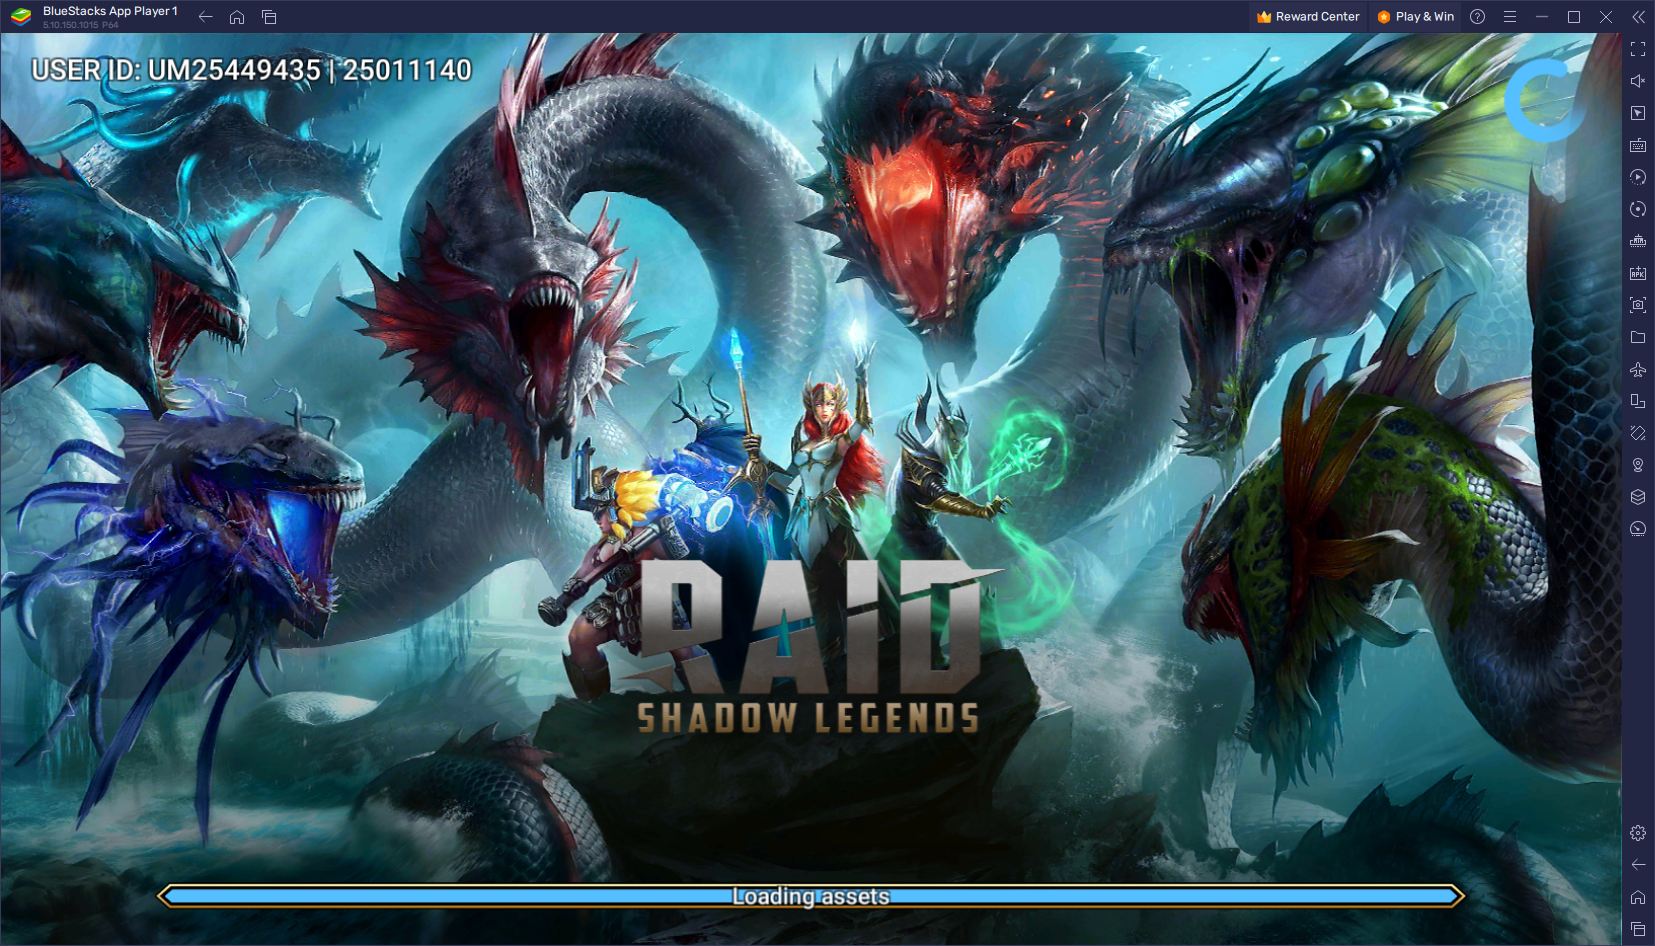 RAID: Shadow Legends Tierliste - Die besten Charaktere im Spiel, geordnet vom stärksten zum schwächsten (Stand Februar 2023)